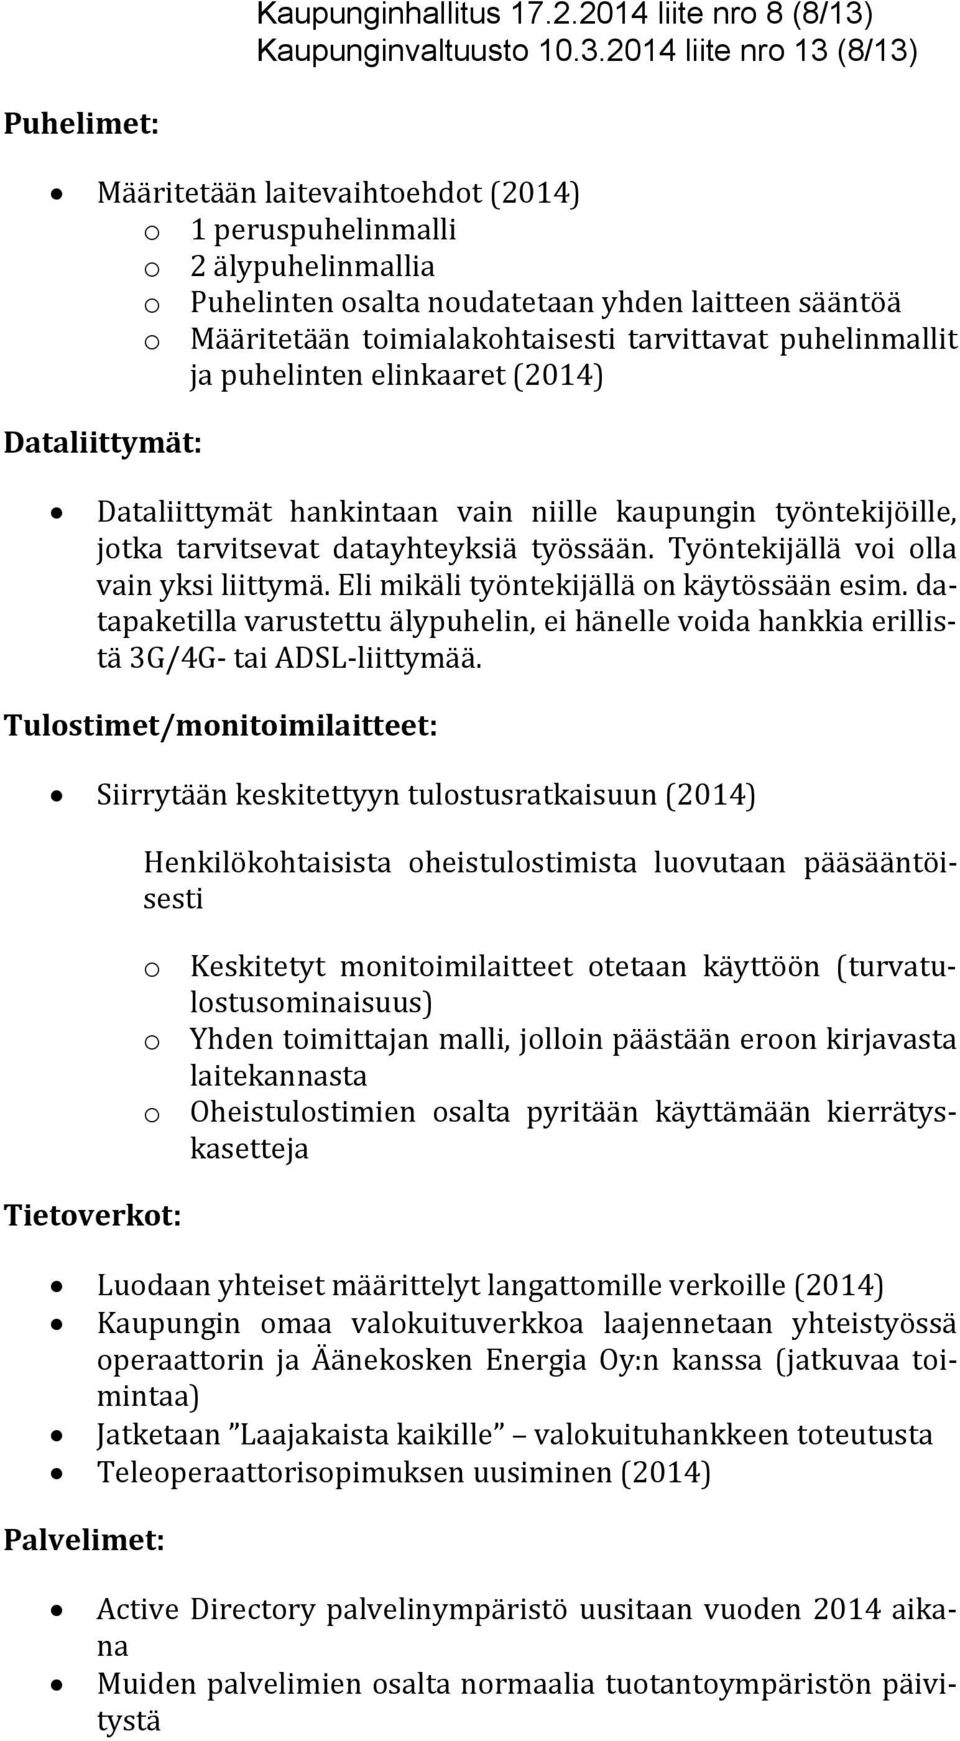 2014 liite nro 13 (8/13) Puhelimet: Määritetään laitevaihtoehdot (2014) o 1 peruspuhelinmalli o 2 älypuhelinmallia o Puhelinten osalta noudatetaan yhden laitteen sääntöä o Määritetään